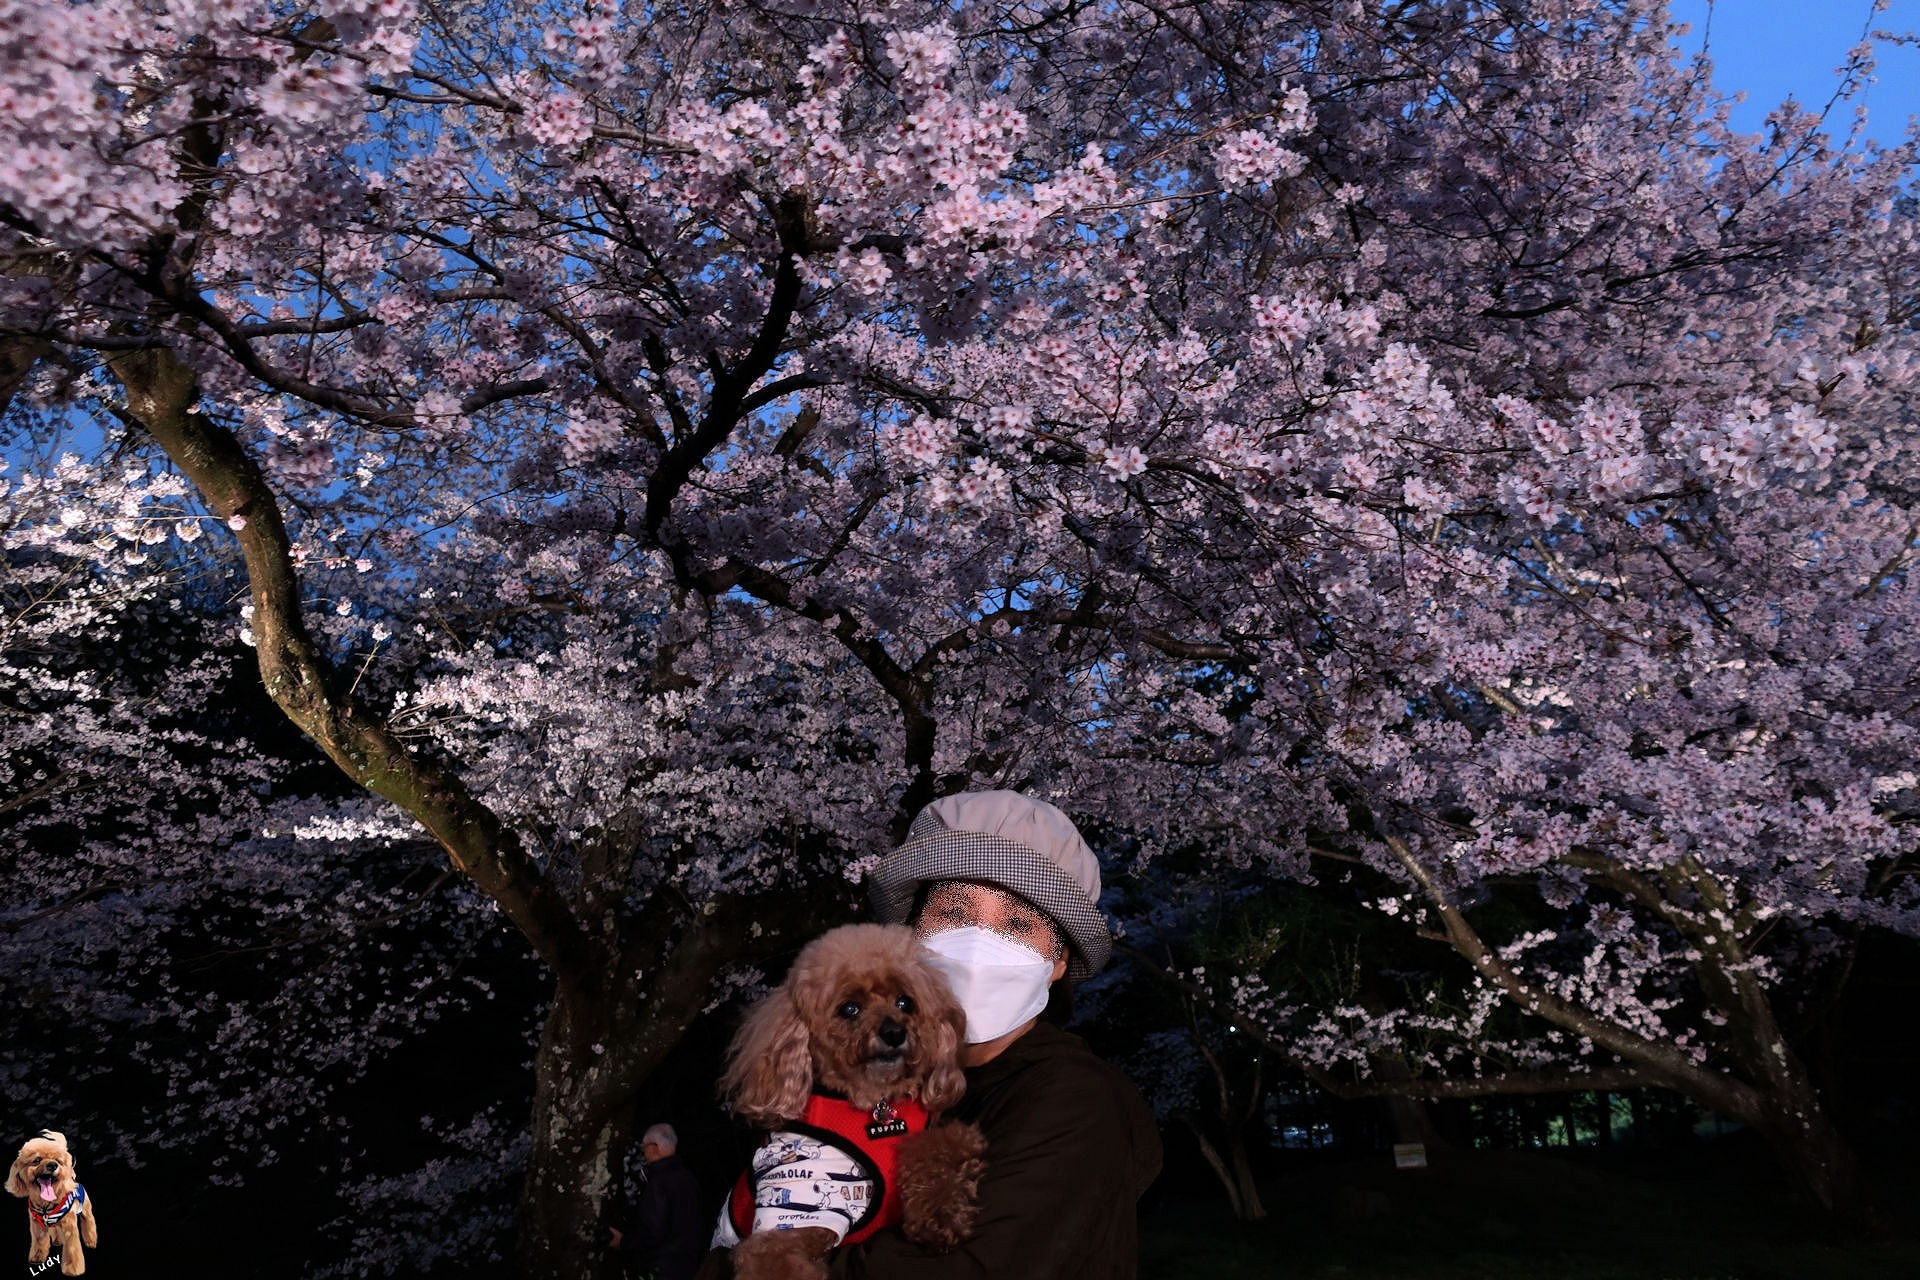 浮かび上がる桜の花びらに魅せられた。